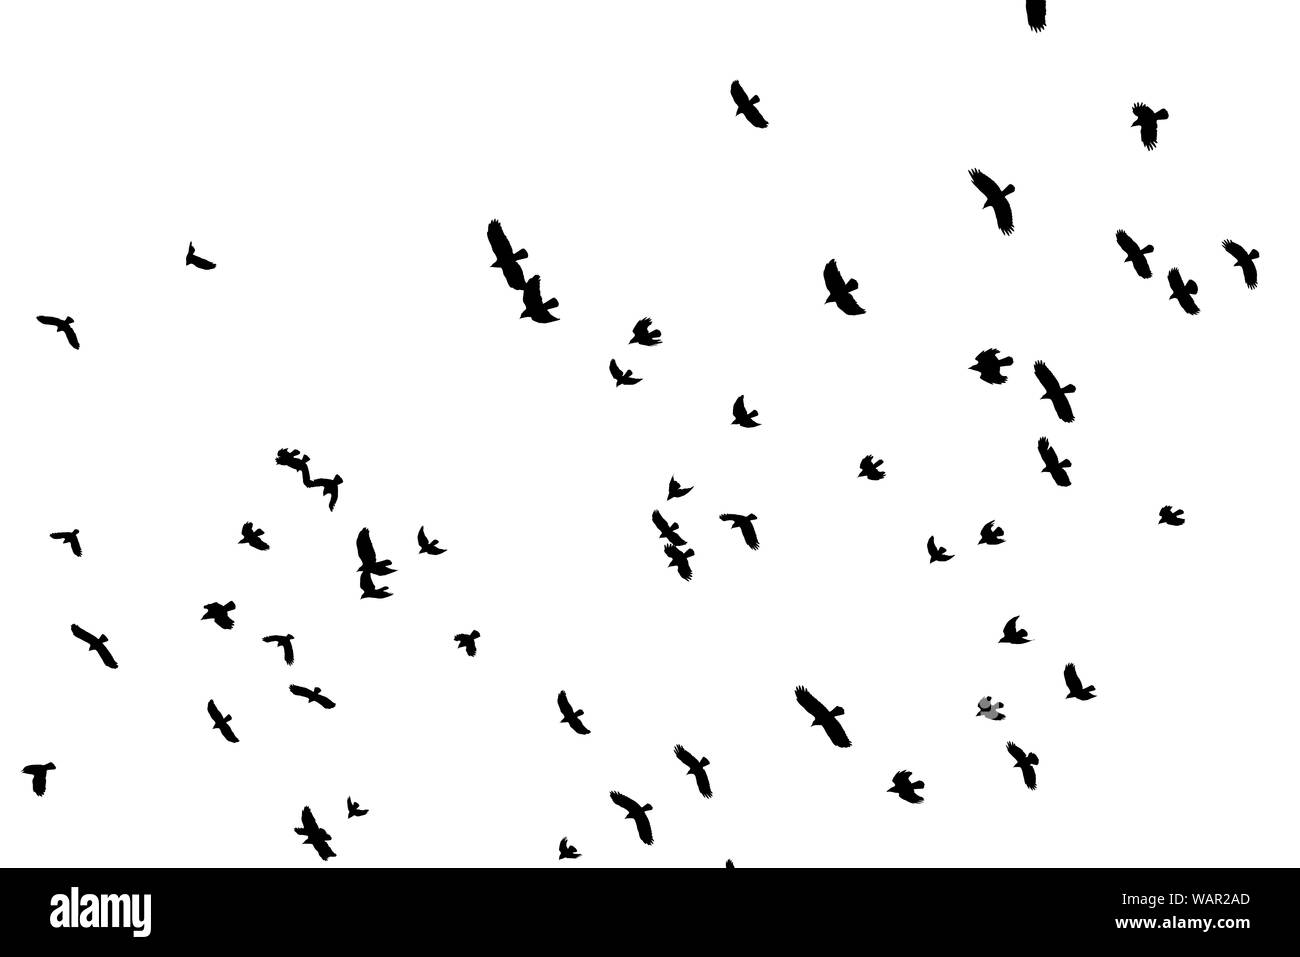 Gregge di black bird forme battenti stagliano contro uno sfondo bianco. Foto Stock